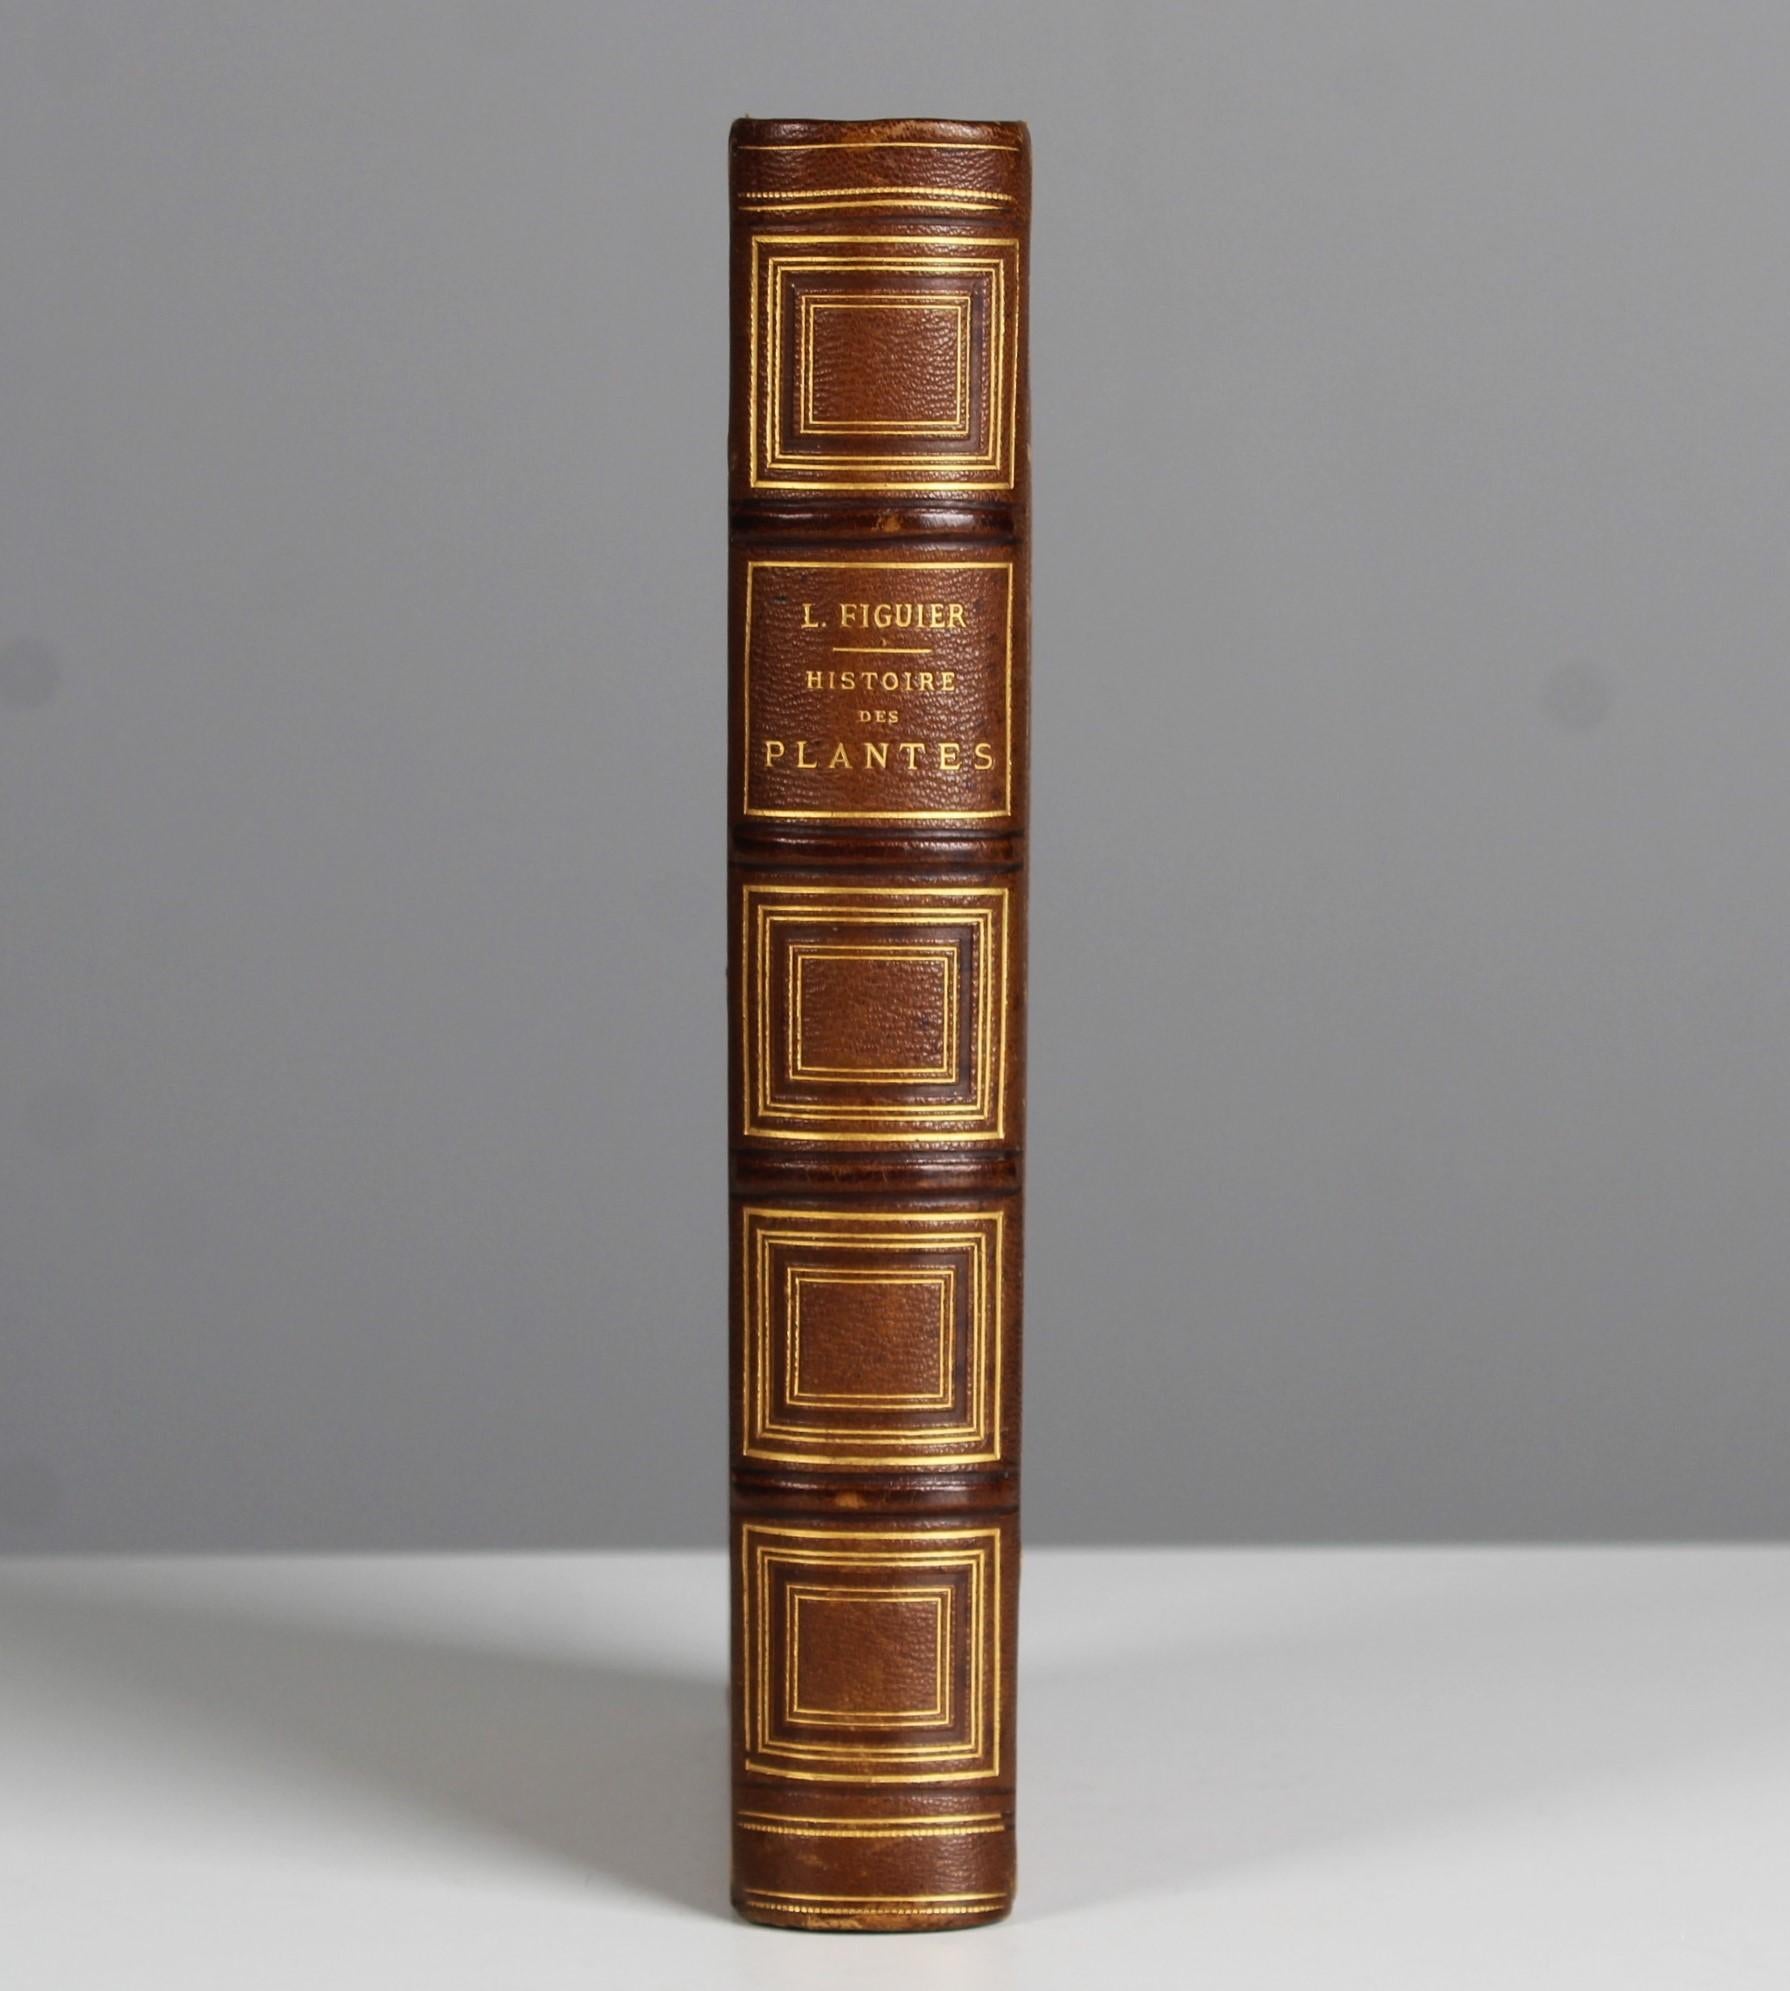 Wunderschönes, seltenes, antikes Lederbuch, Original von 1865.
